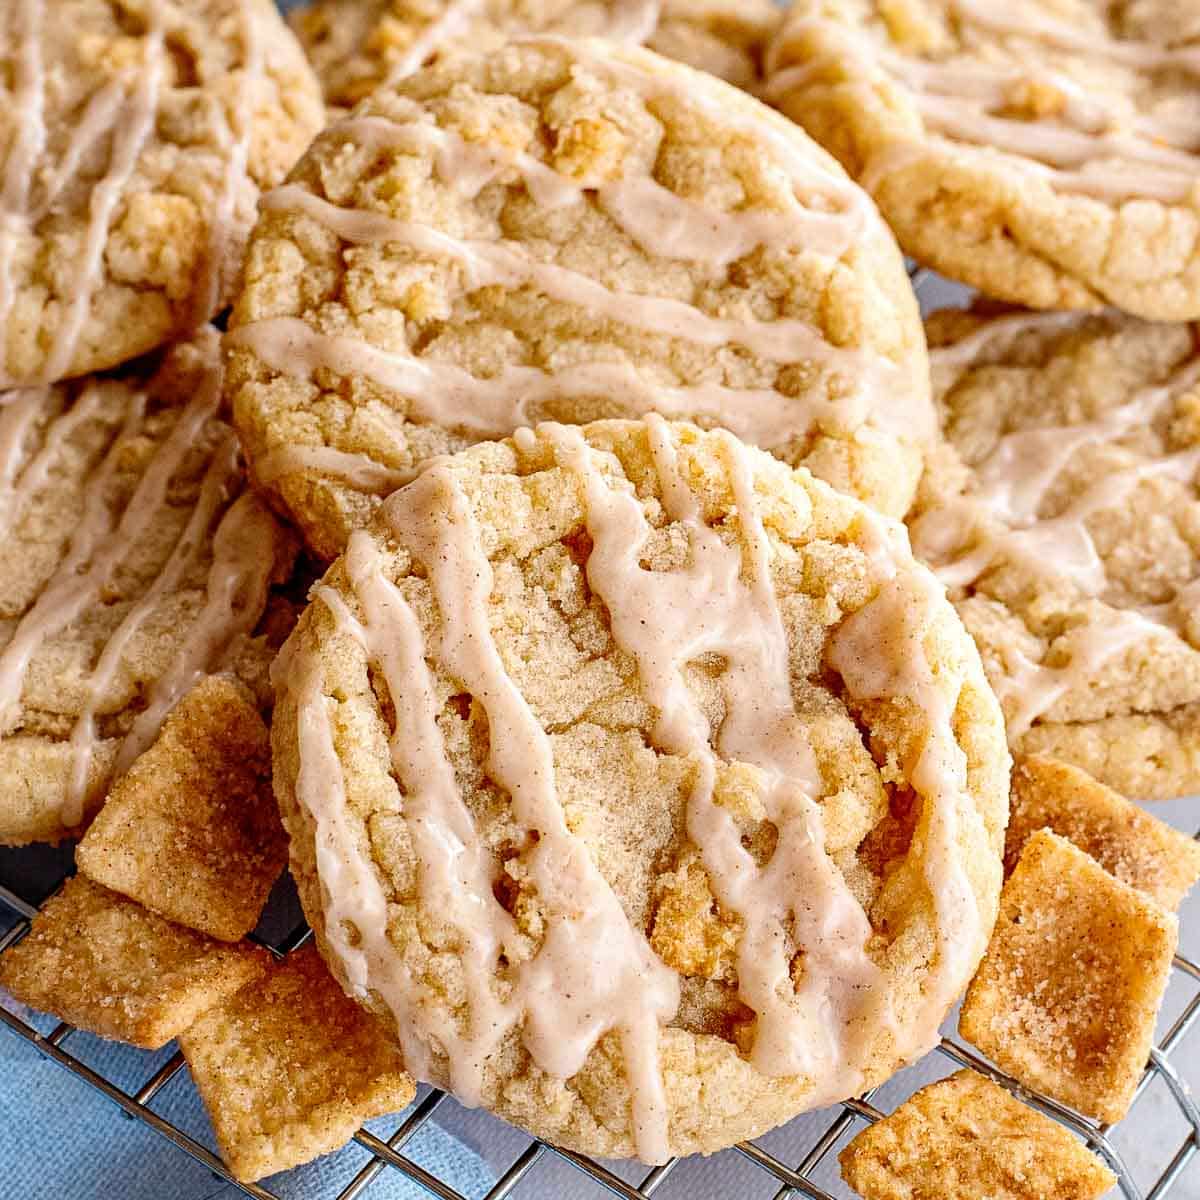 https://boulderlocavore.com/wp-content/uploads/2022/07/cinnamon-toast-crunch-cookies-on-rack.jpg